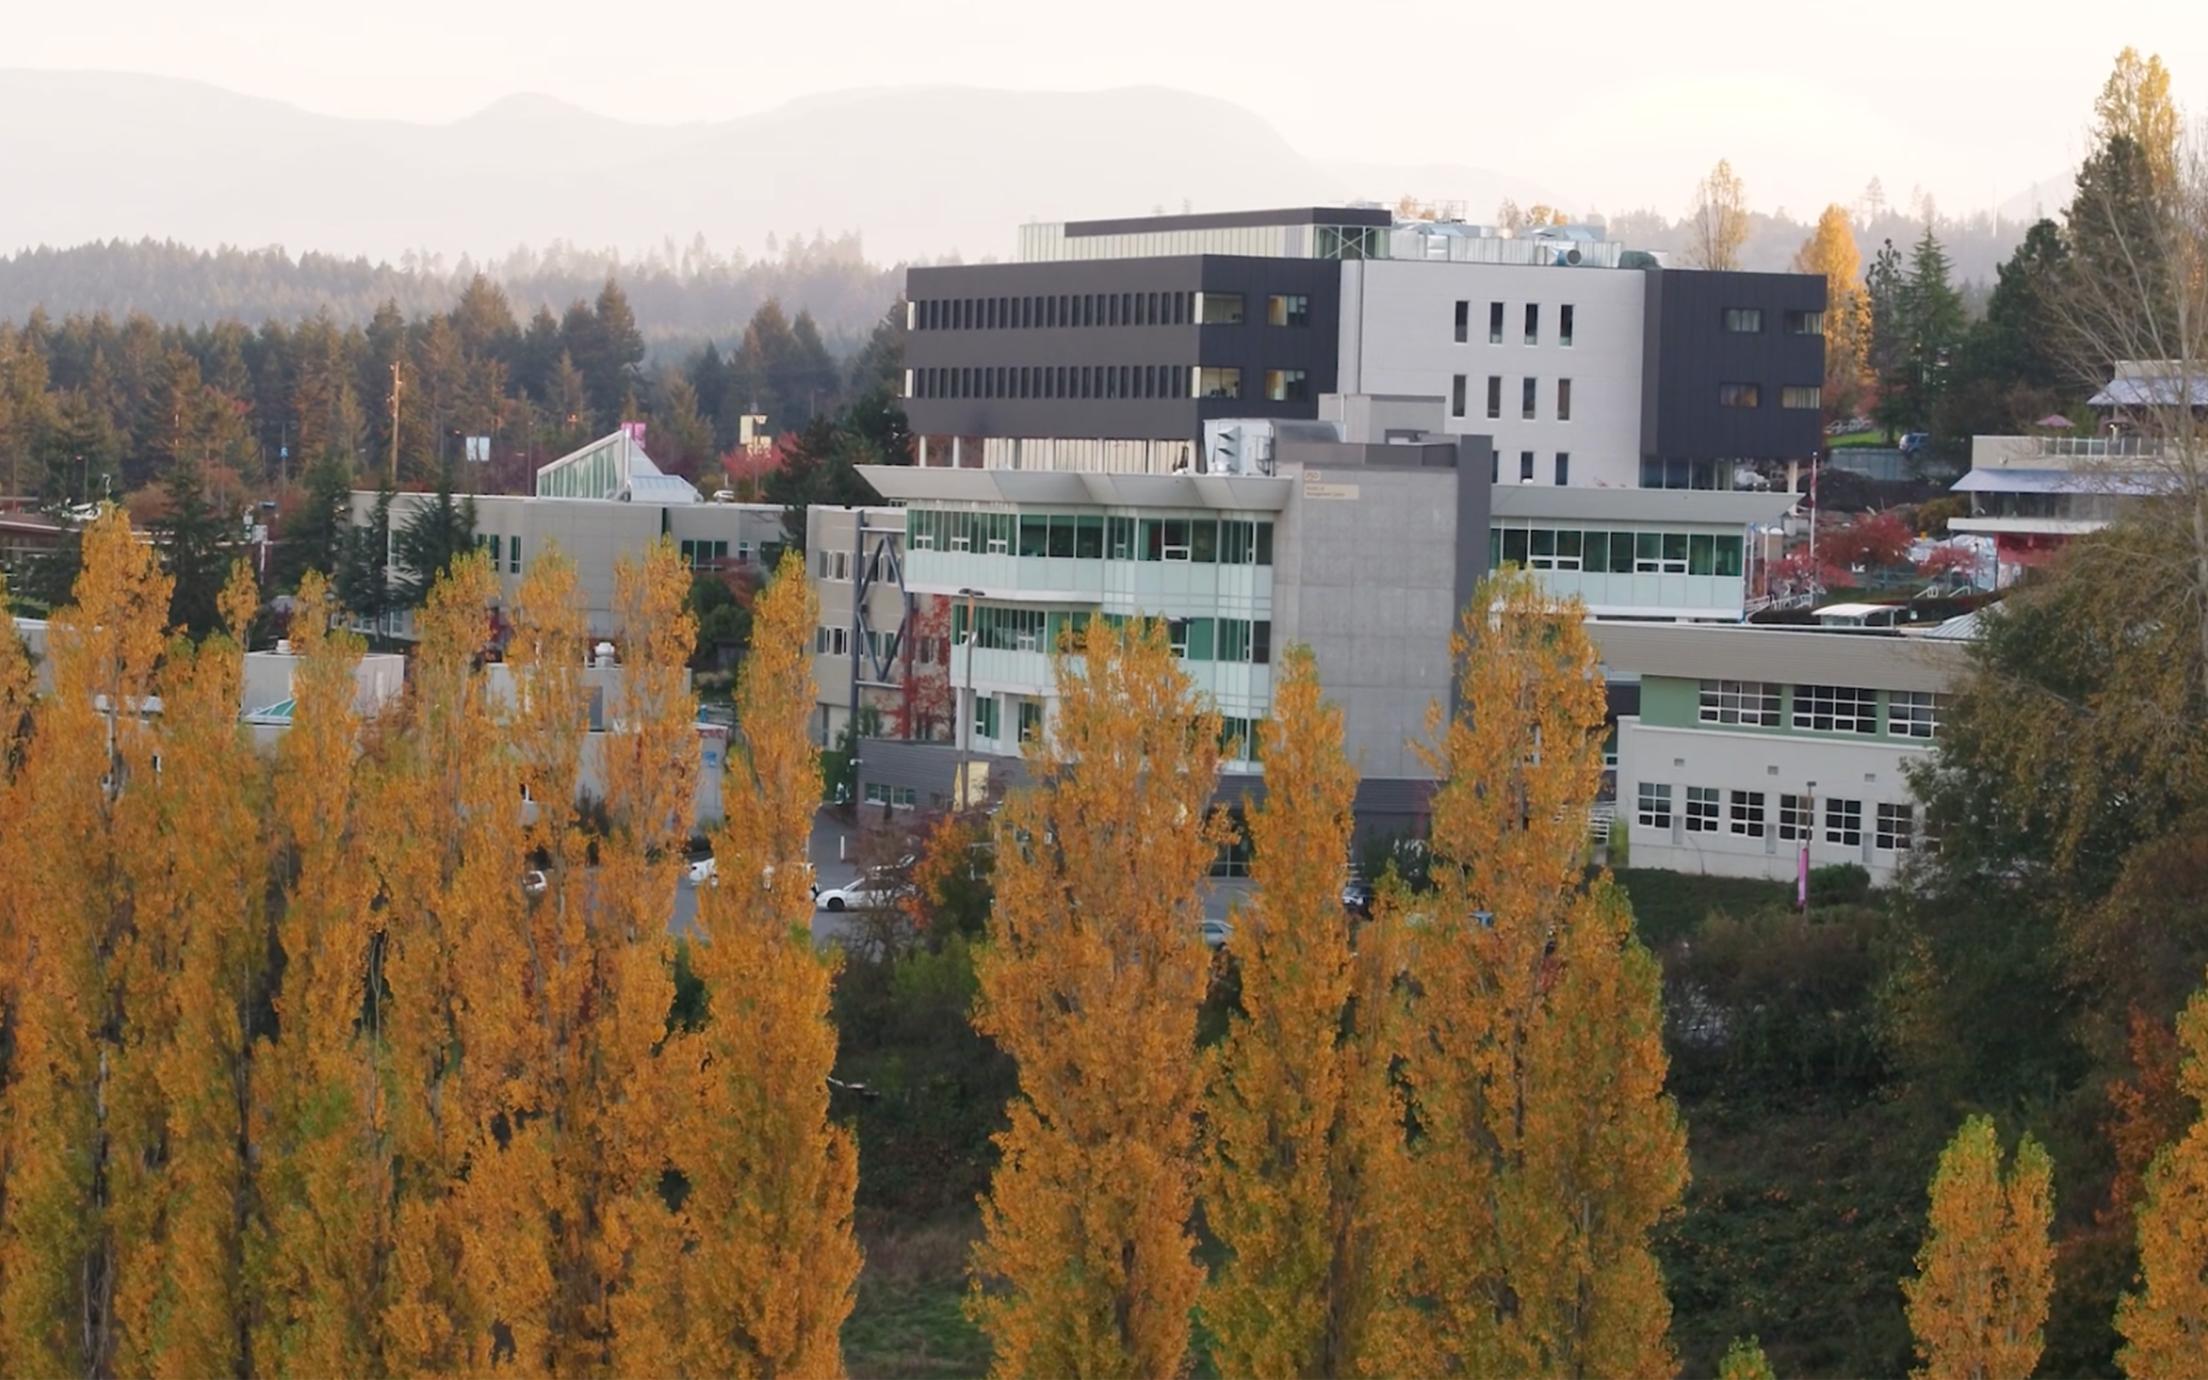 VIU Nanaimo campus with autumn colours